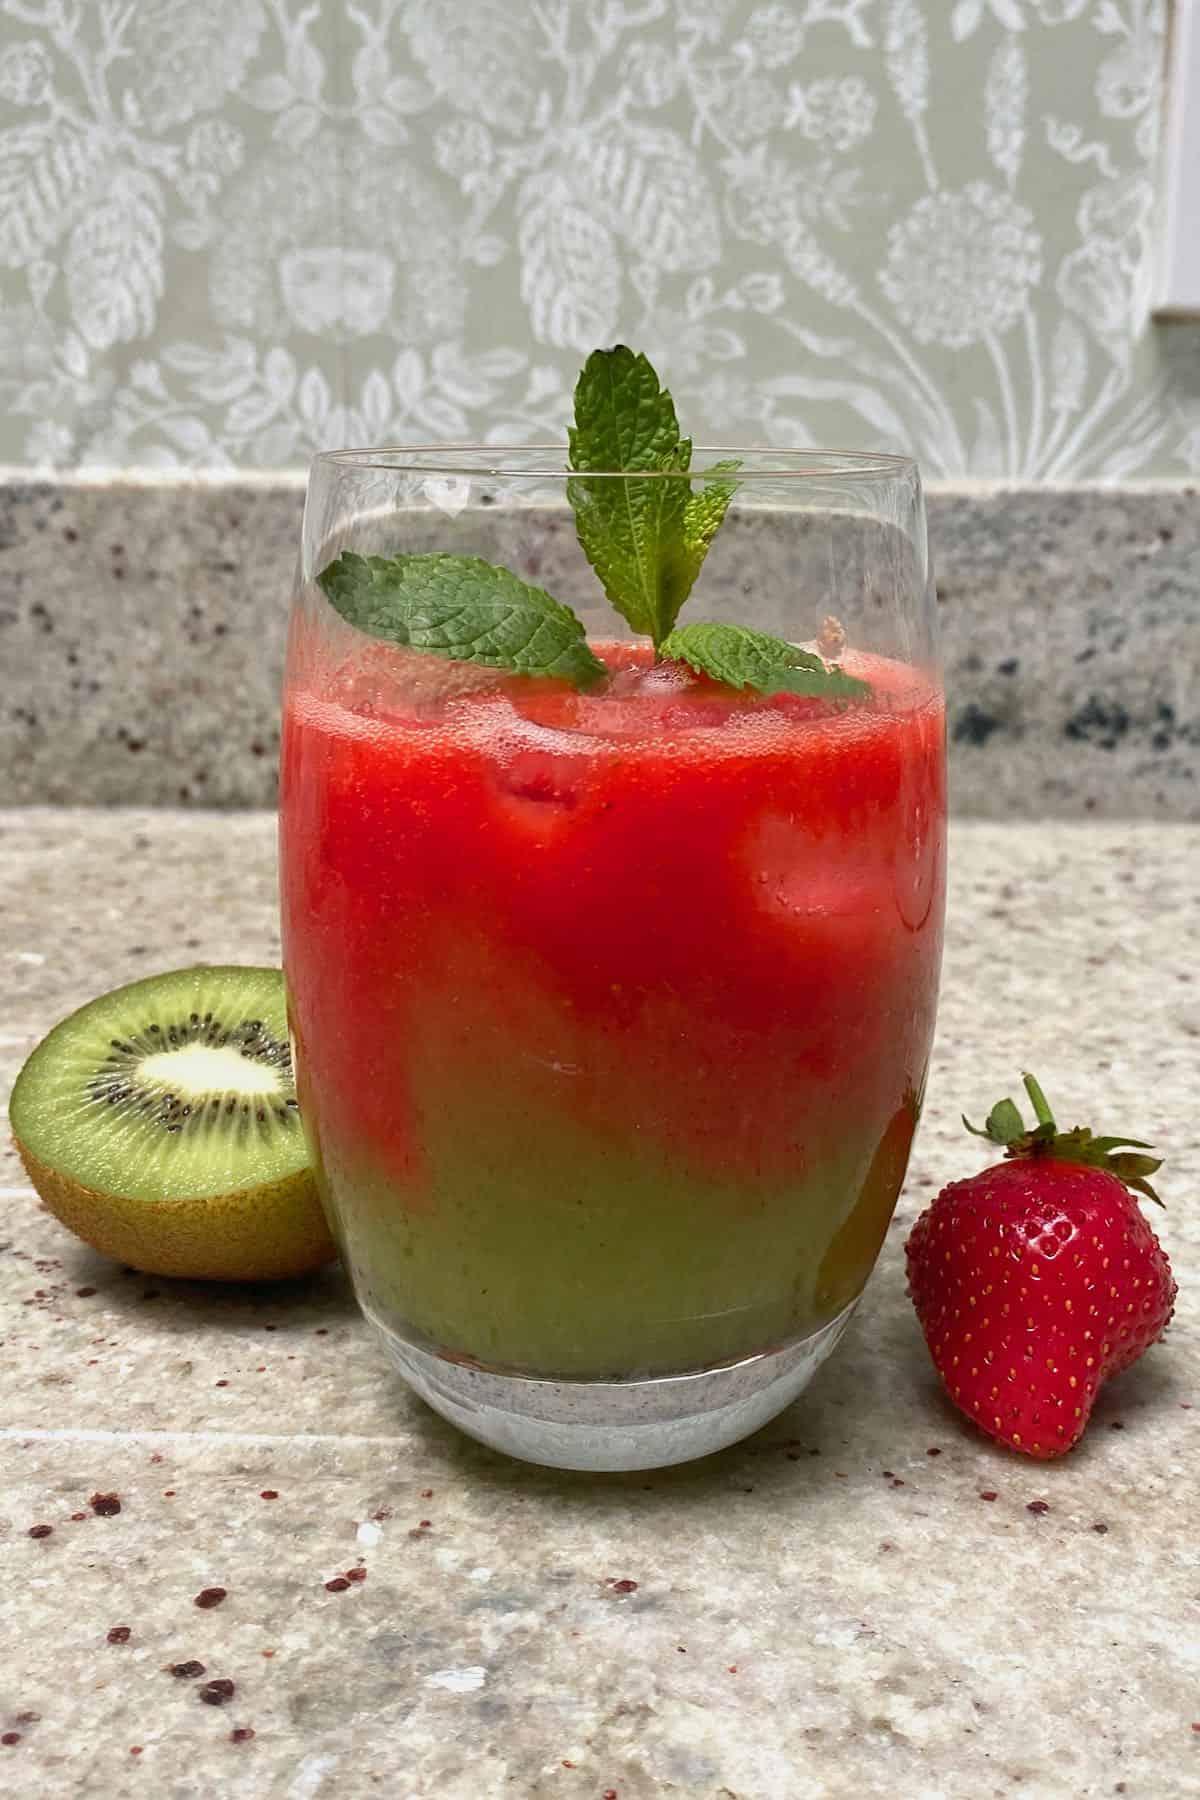 A glass with strawberry kiwi juice